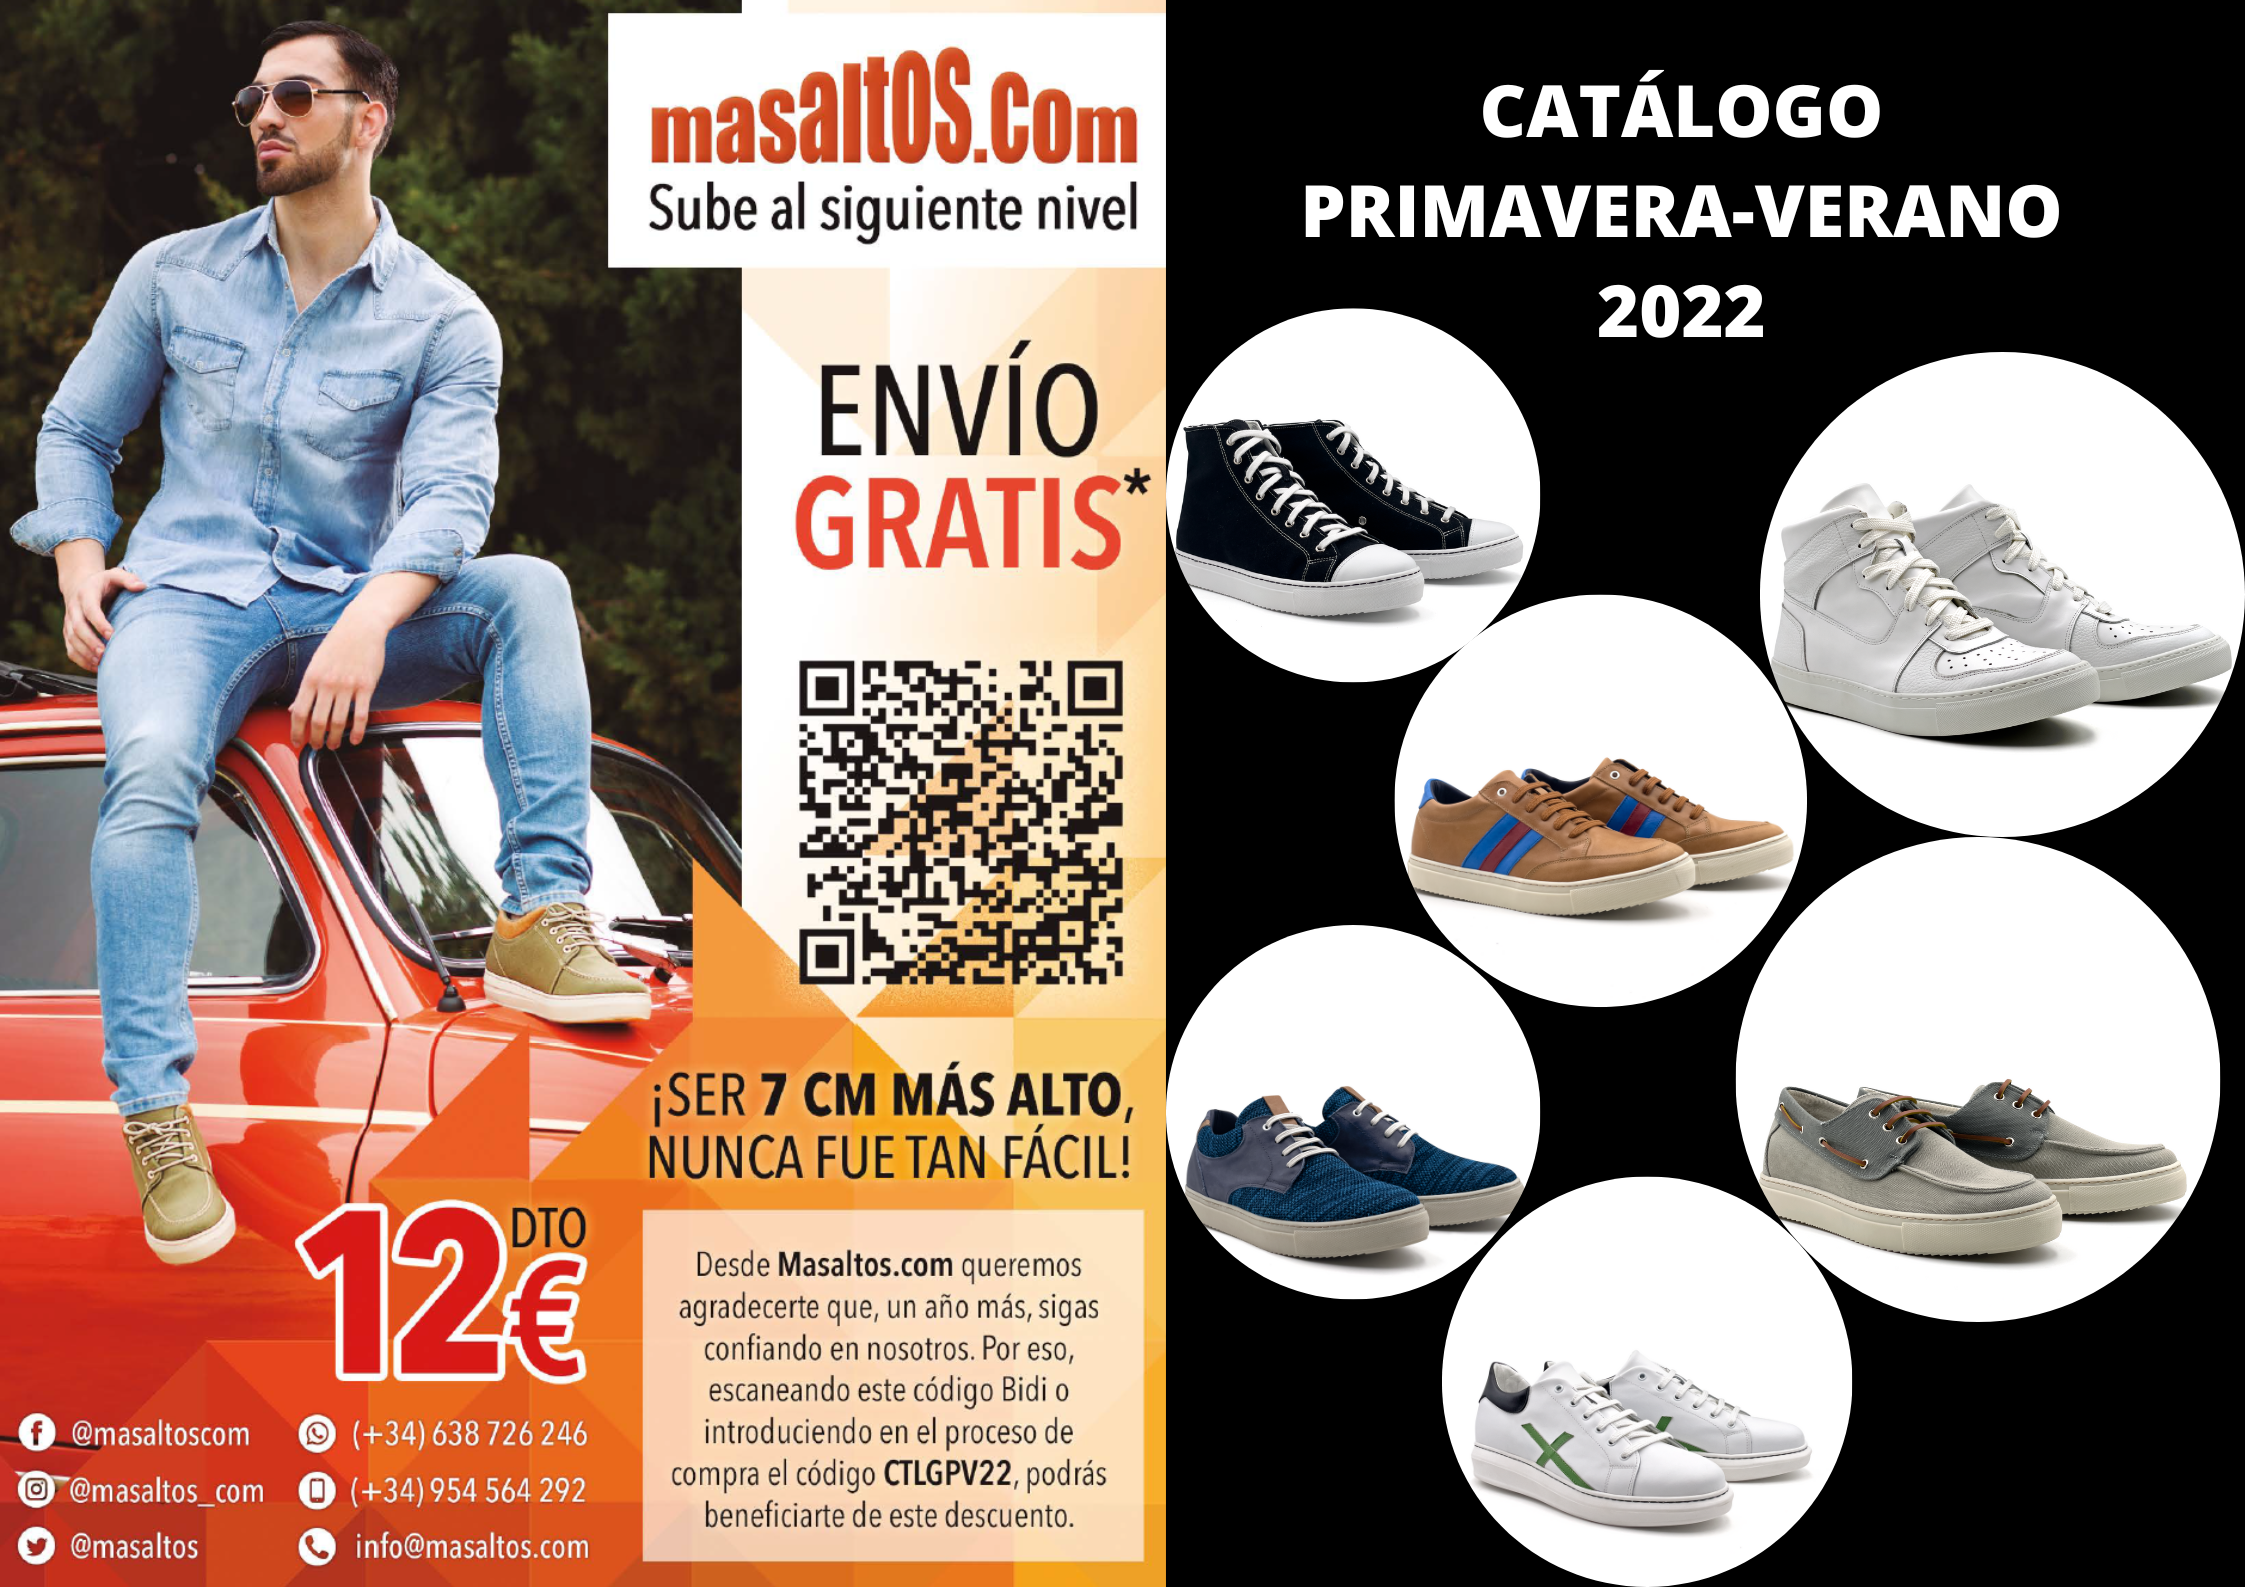 heavy compact heart Masaltos.com launches a new elevator shoes catalogue - Blog Masaltos.com